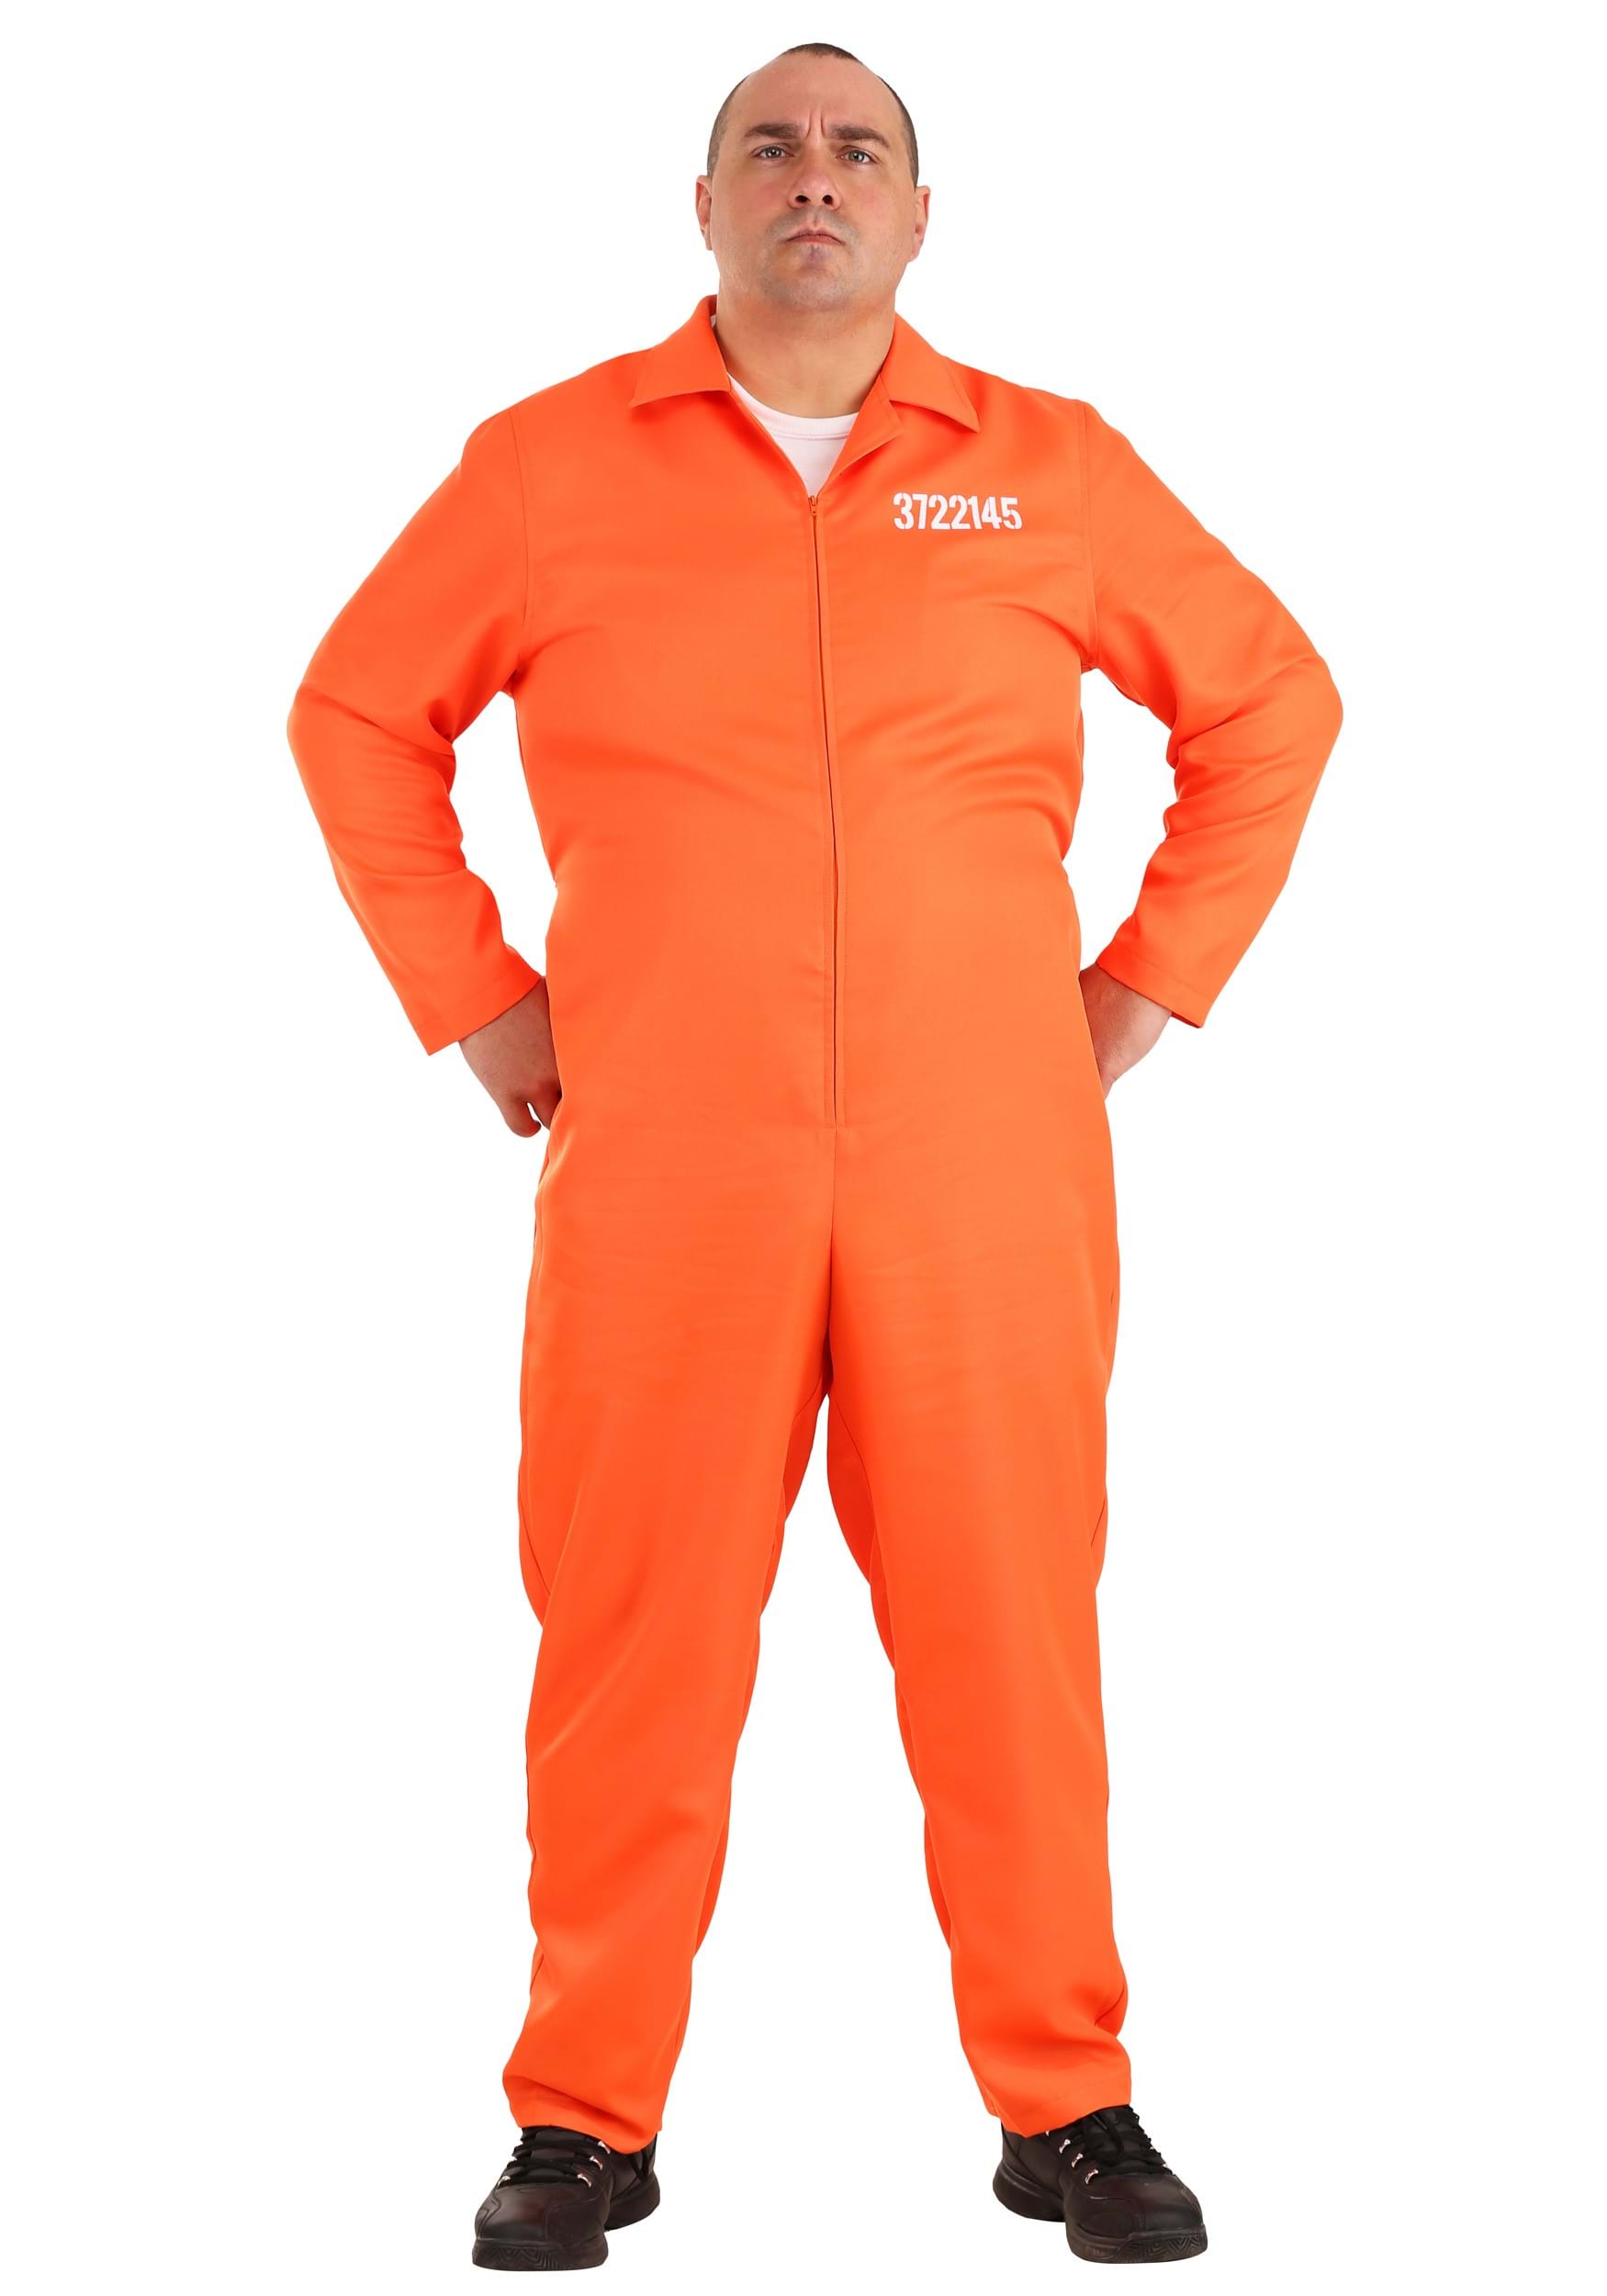 Photos - Fancy Dress FUN Costumes Plus Size Men's Prison Jumpsuit Orange/White FUN0536PL